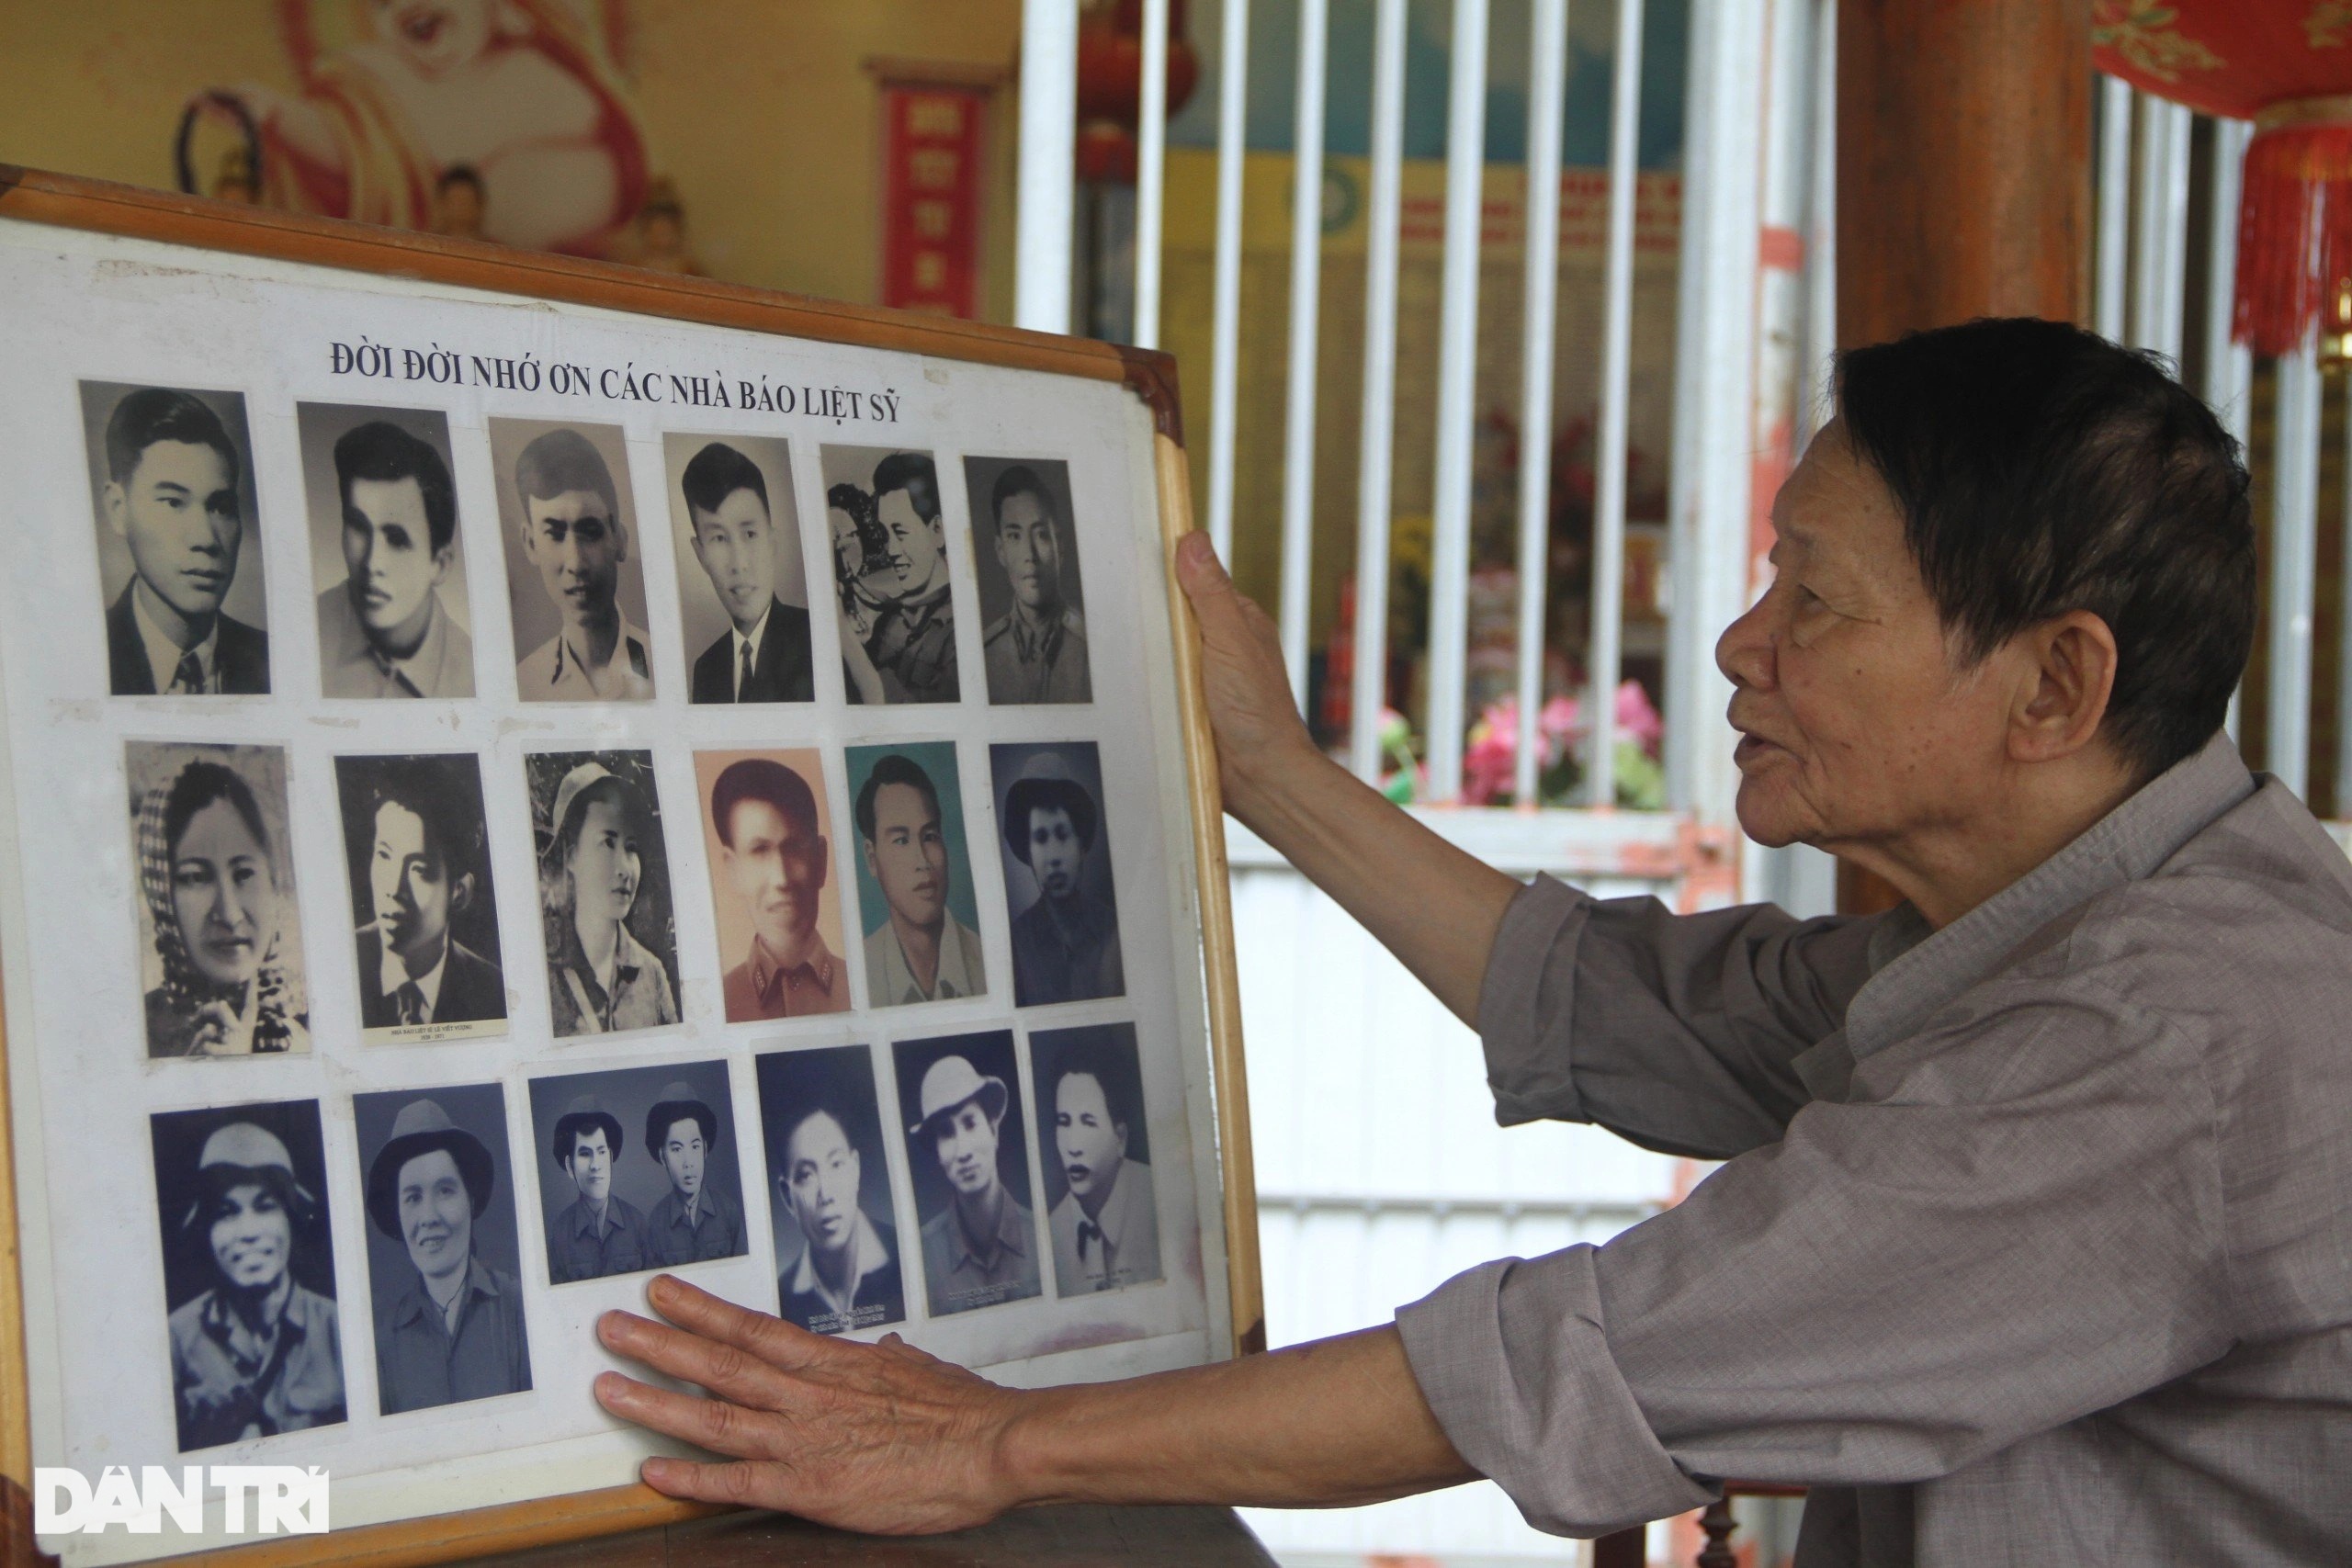 Nhiều di ảnh của các nhà báo liệt sỹ, được nhà báo Văn Hiền sưu tầm về thờ tại chùa (Ảnh: Nguyễn Phê).